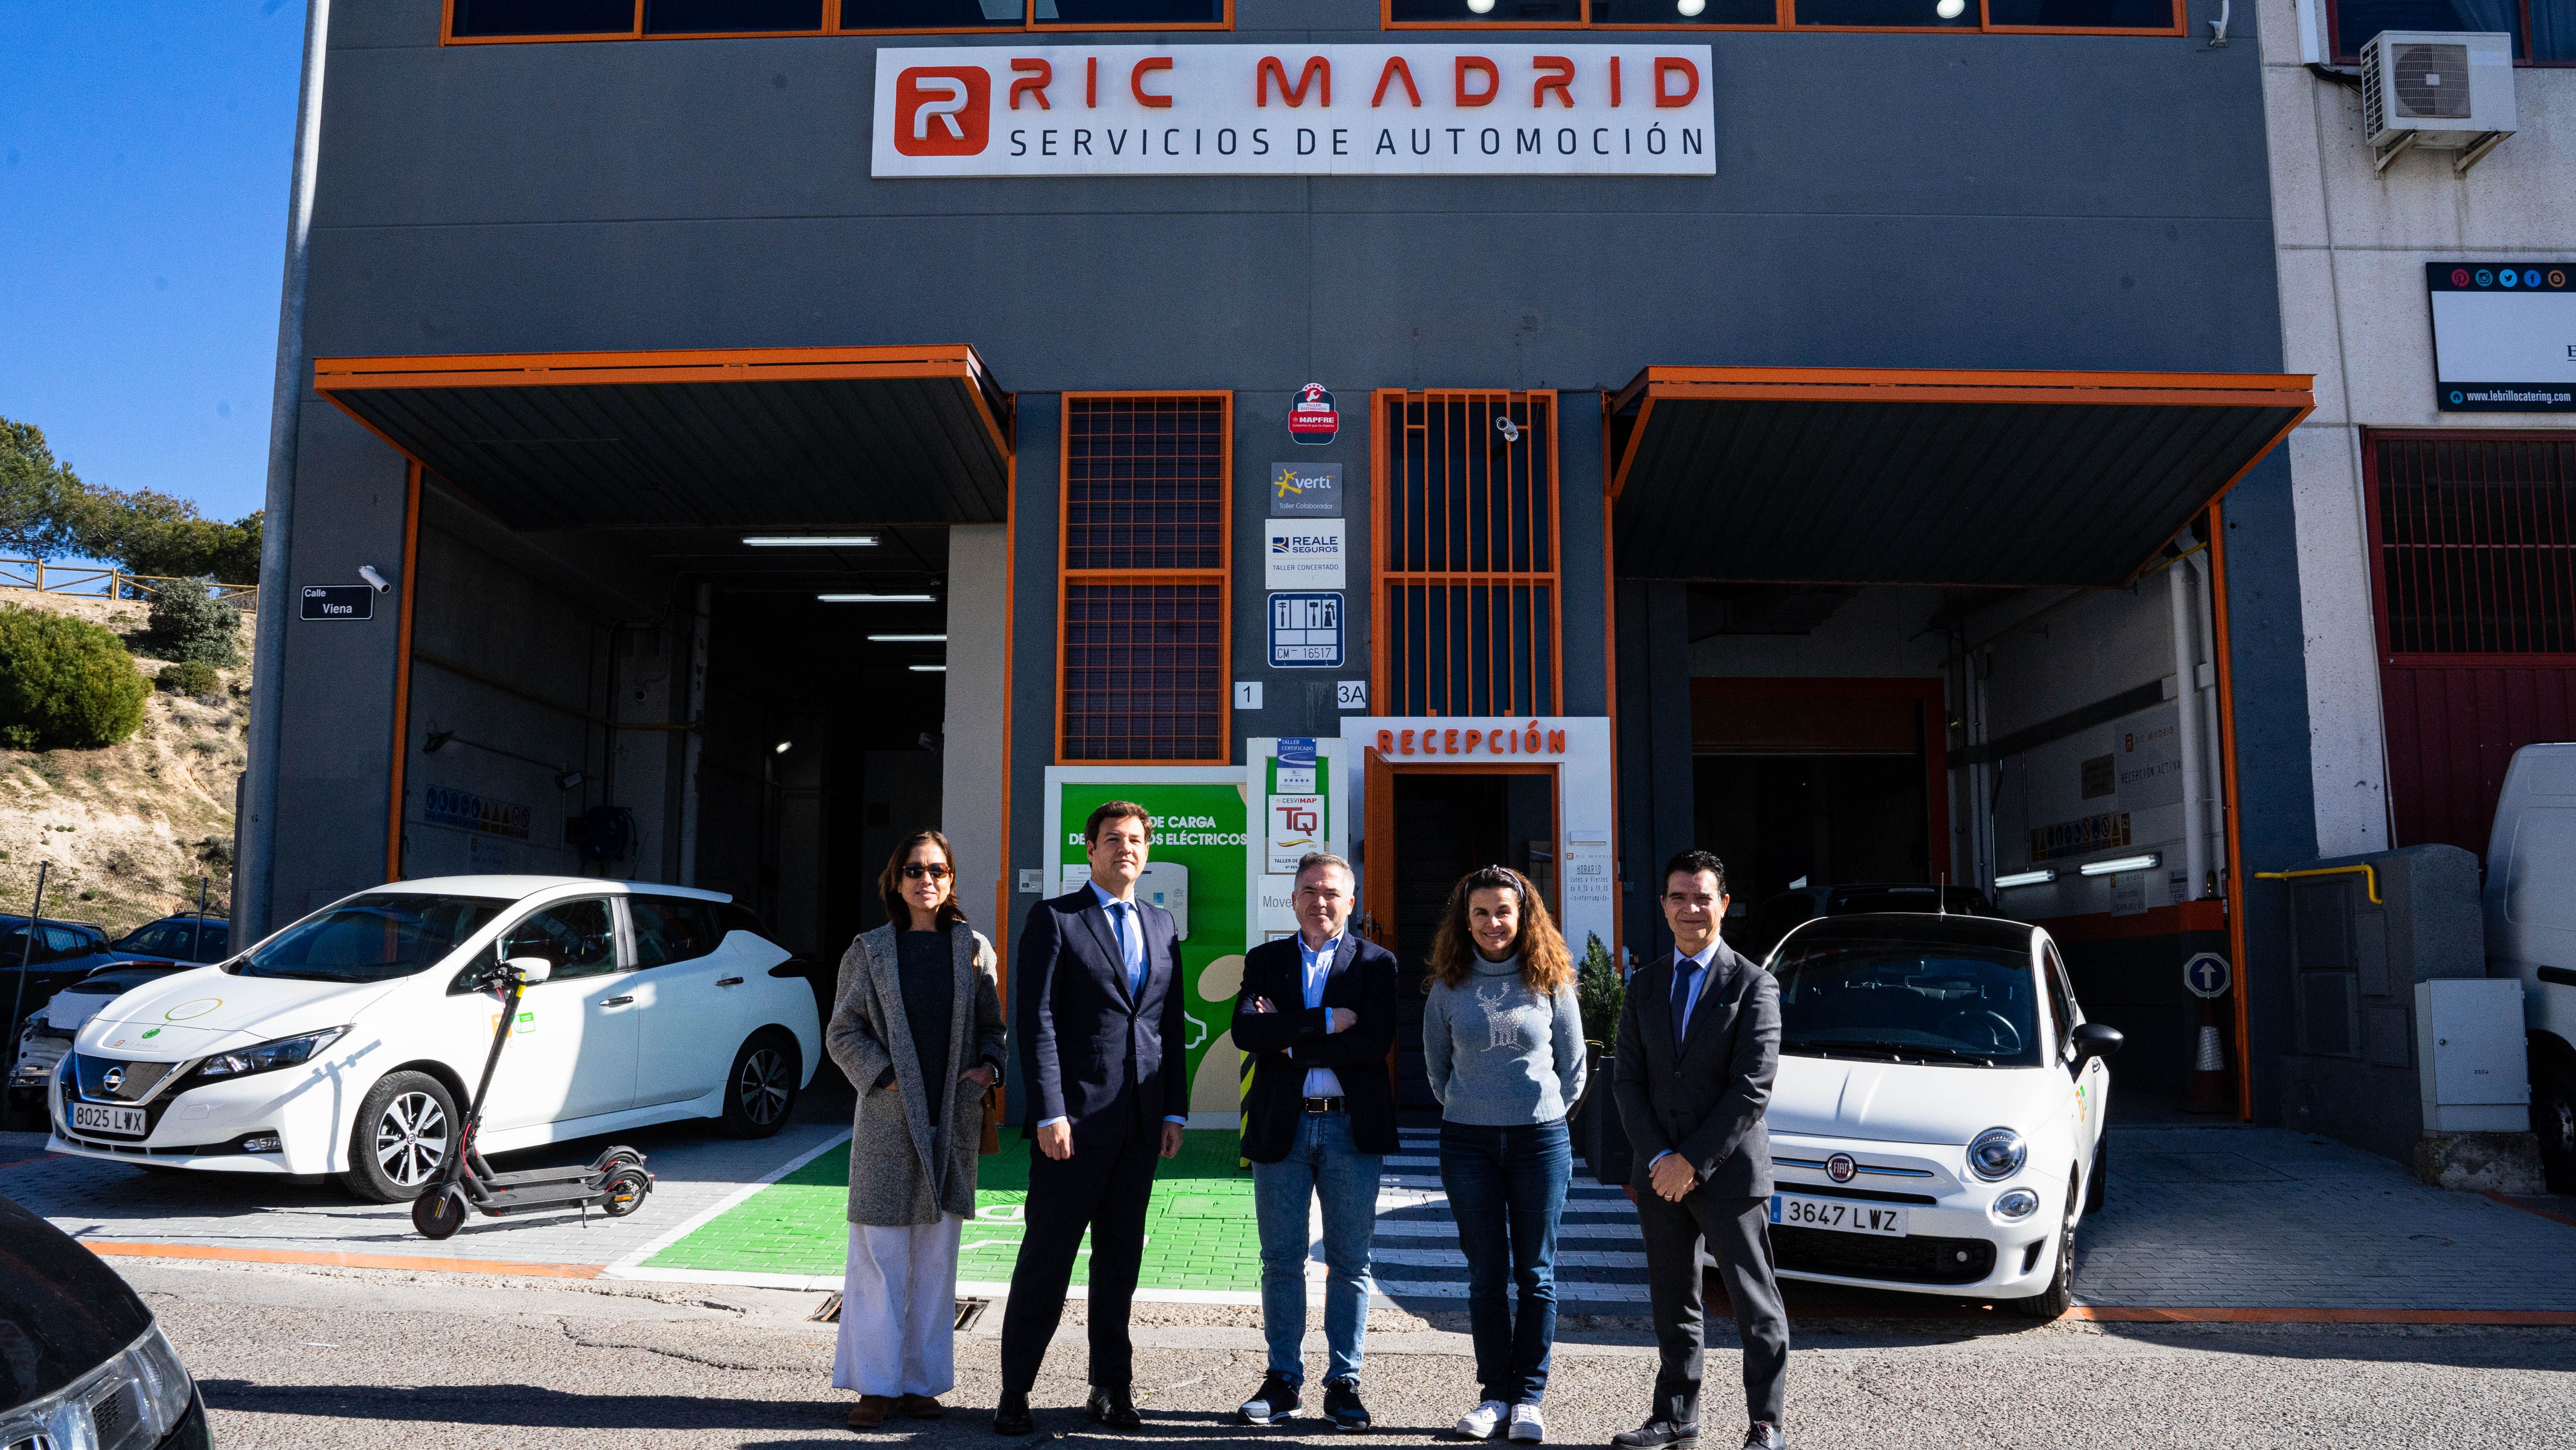 Imperial cubo arroz El alcalde de Las Rozas visita las instalaciones de RIC Madrid, el taller  más sostenible de España